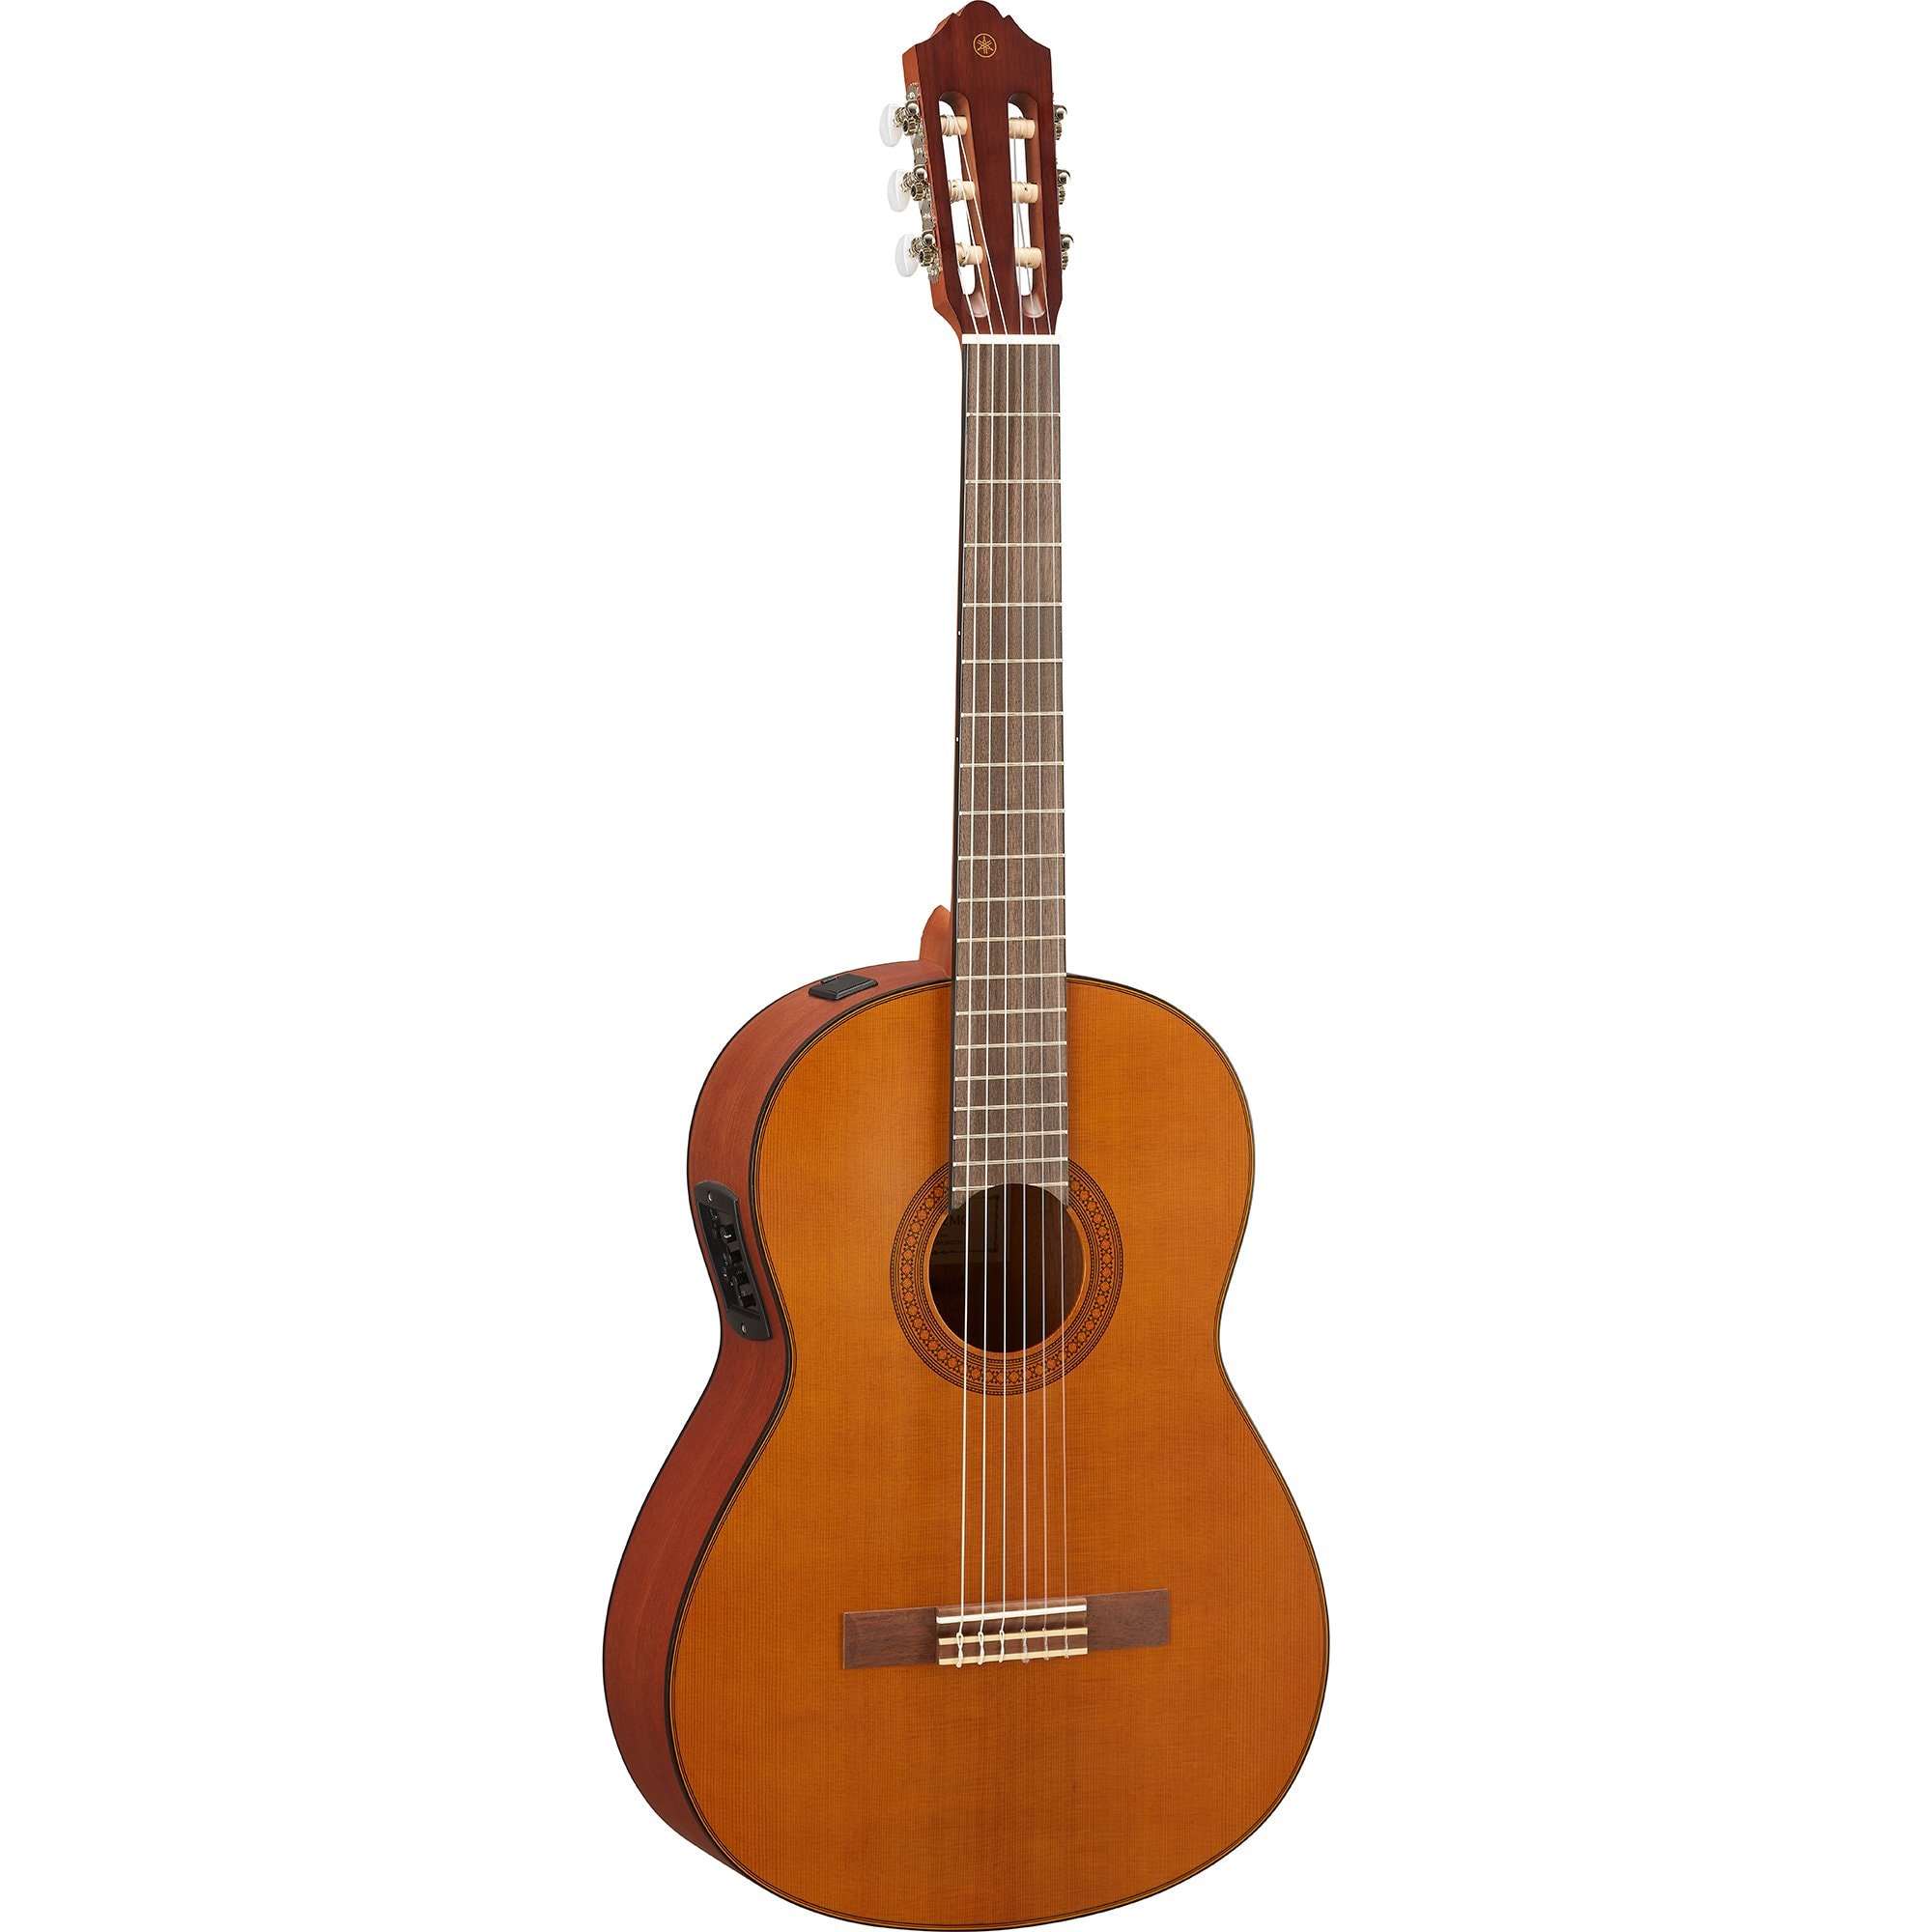 ヤマハのクラシックギター cg142s - 楽器/器材